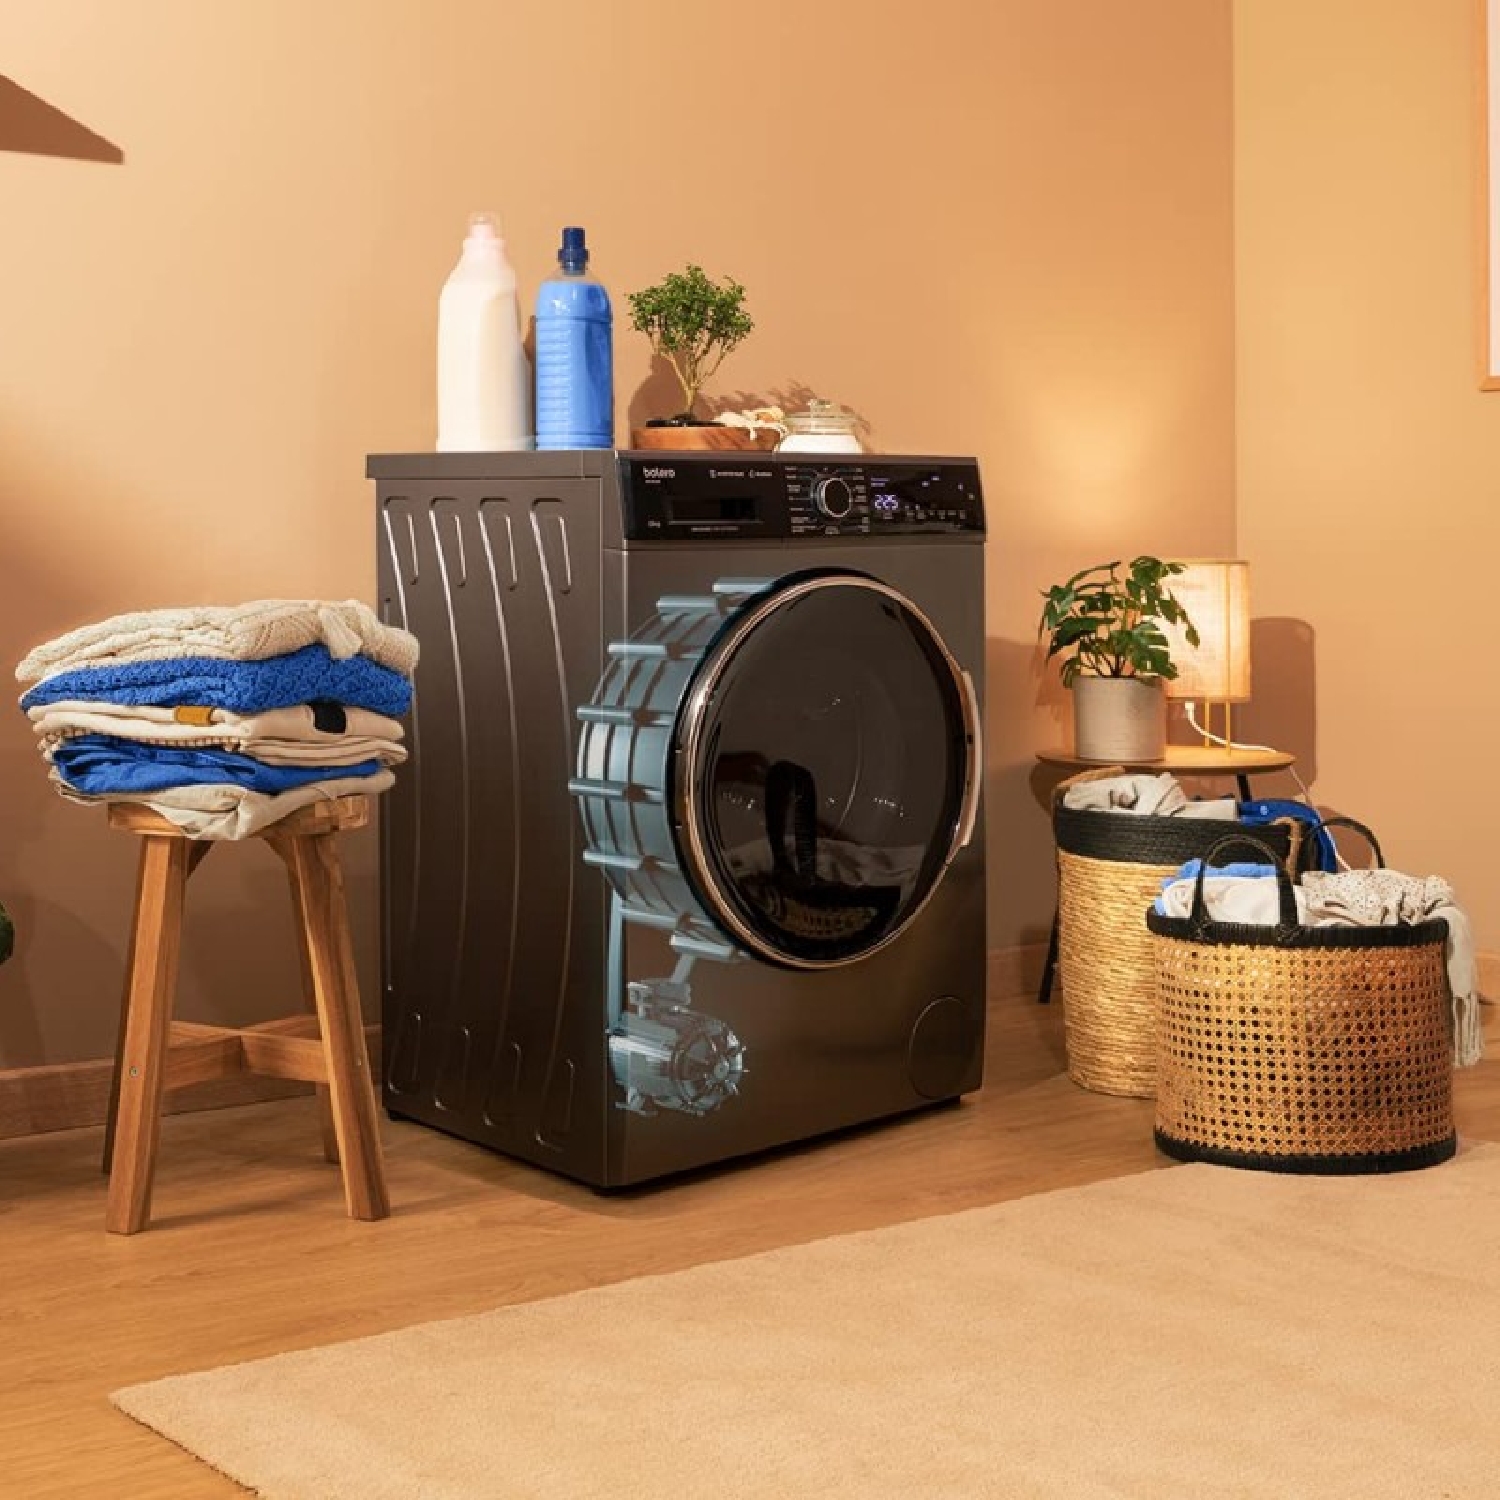 Las lavadoras Bolero DressCode de Cecotec, ahora con sistema autodosis